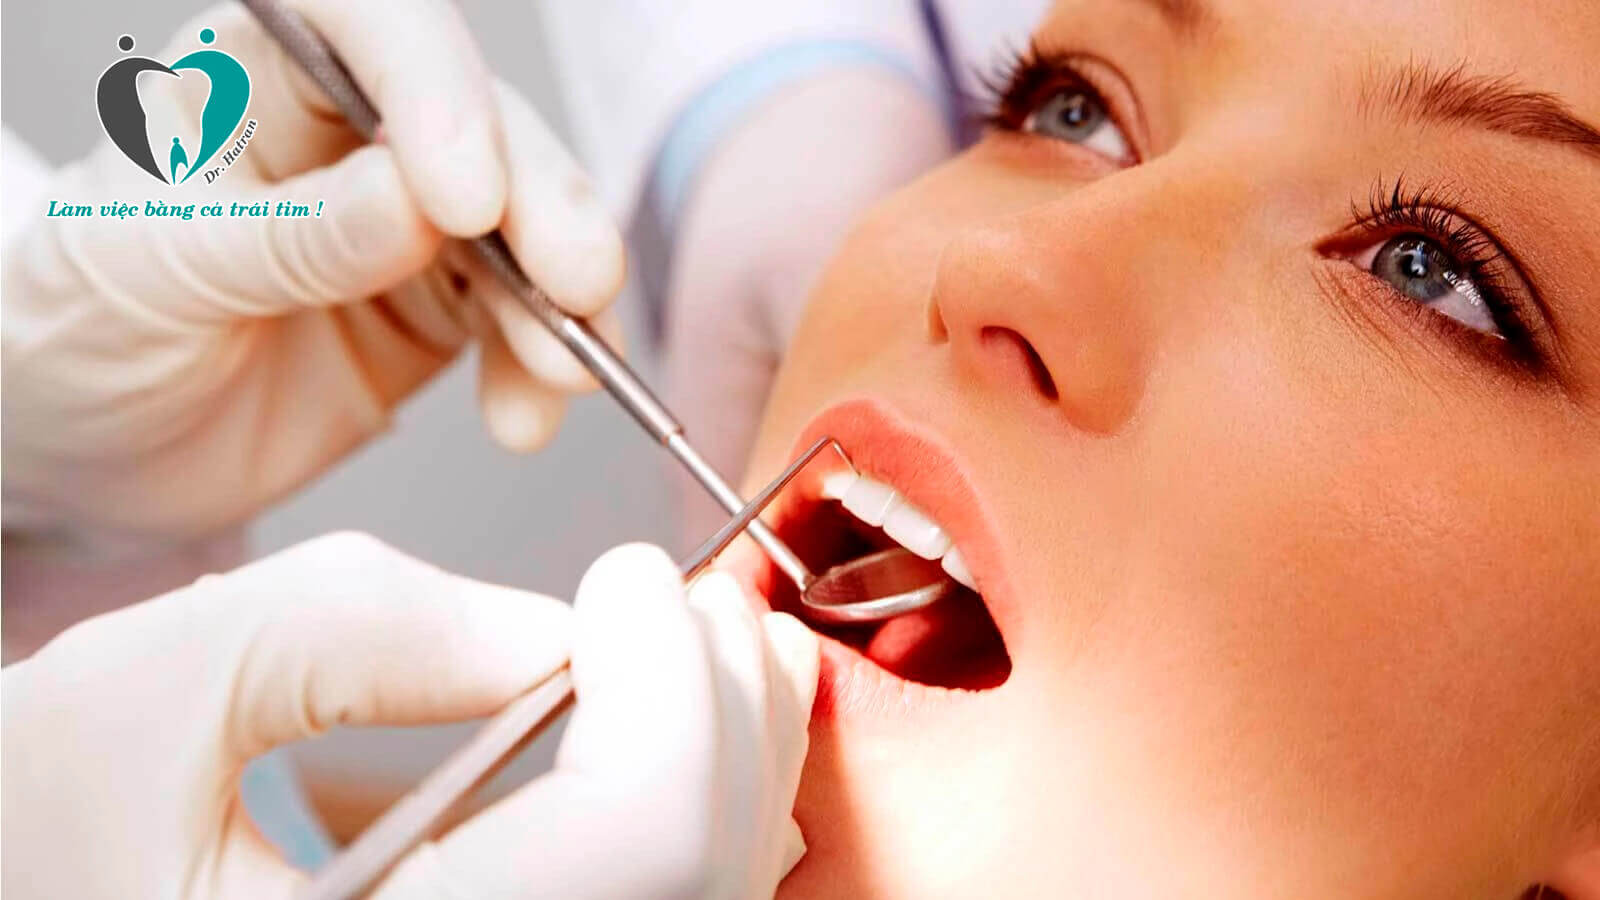 Khám và tư vấn khi cấy ghép răng Implant